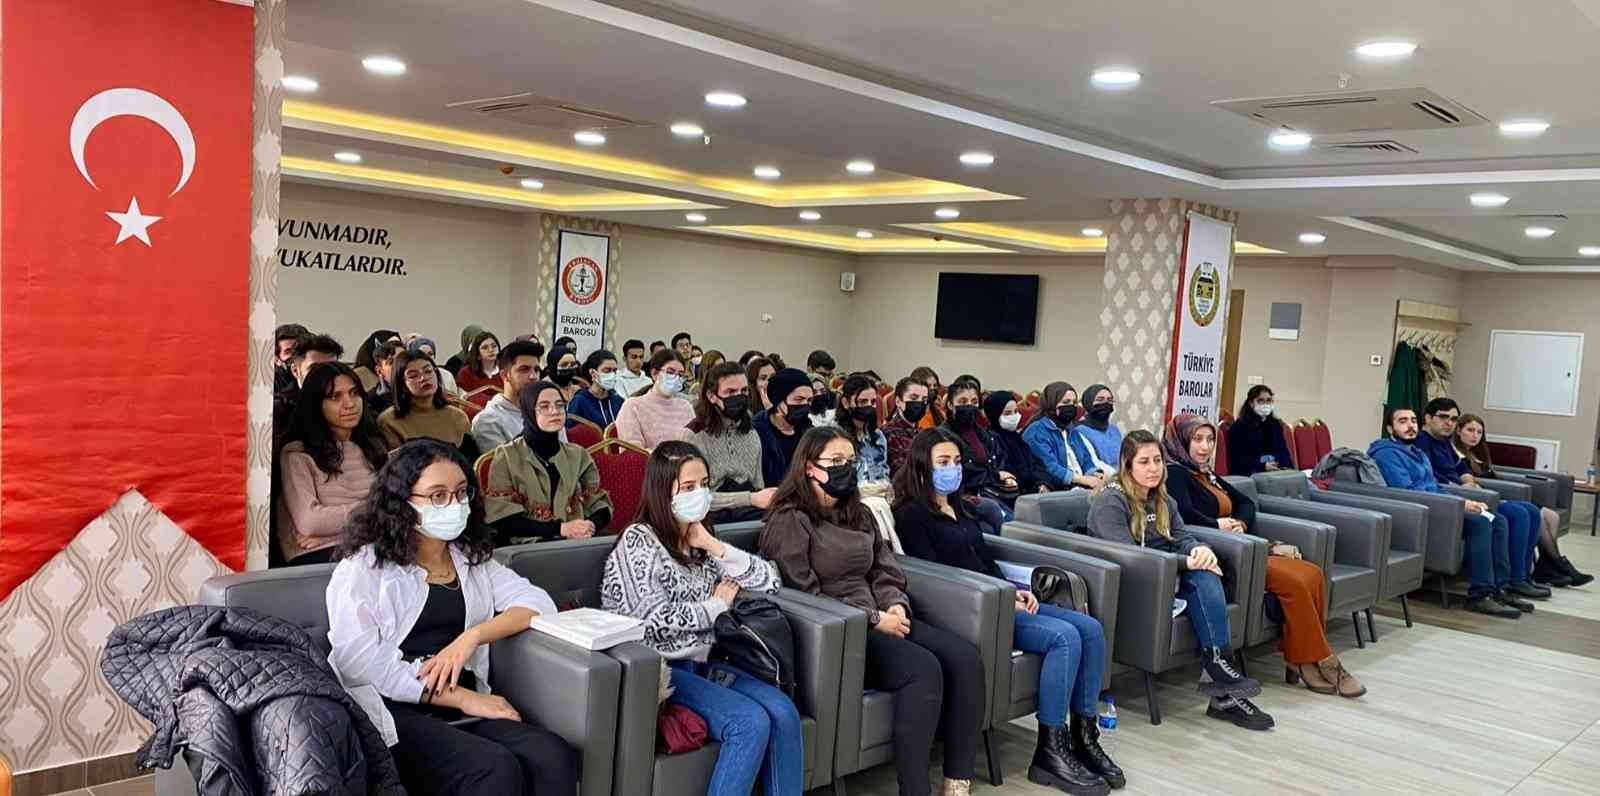 Kadın hakları ve kadına şiddetle mücadele konulu seminer yapıldı #erzincan